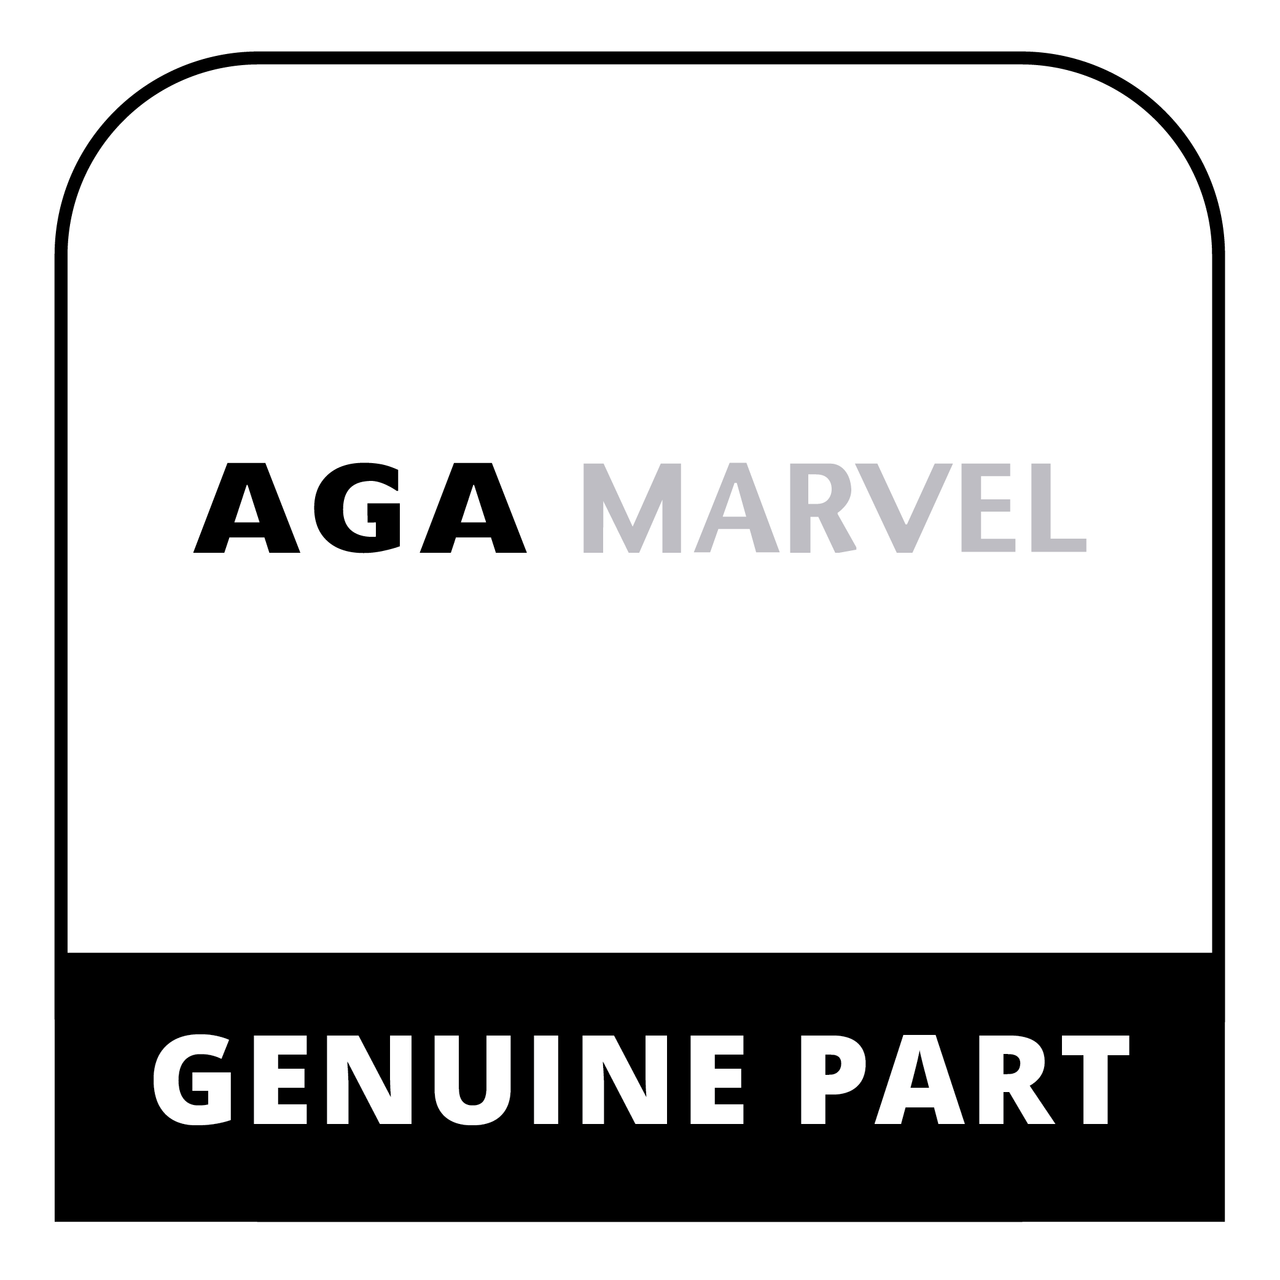 AGA Marvel S80-54372-00 - Im Assembly - Genuine AGA Marvel Part